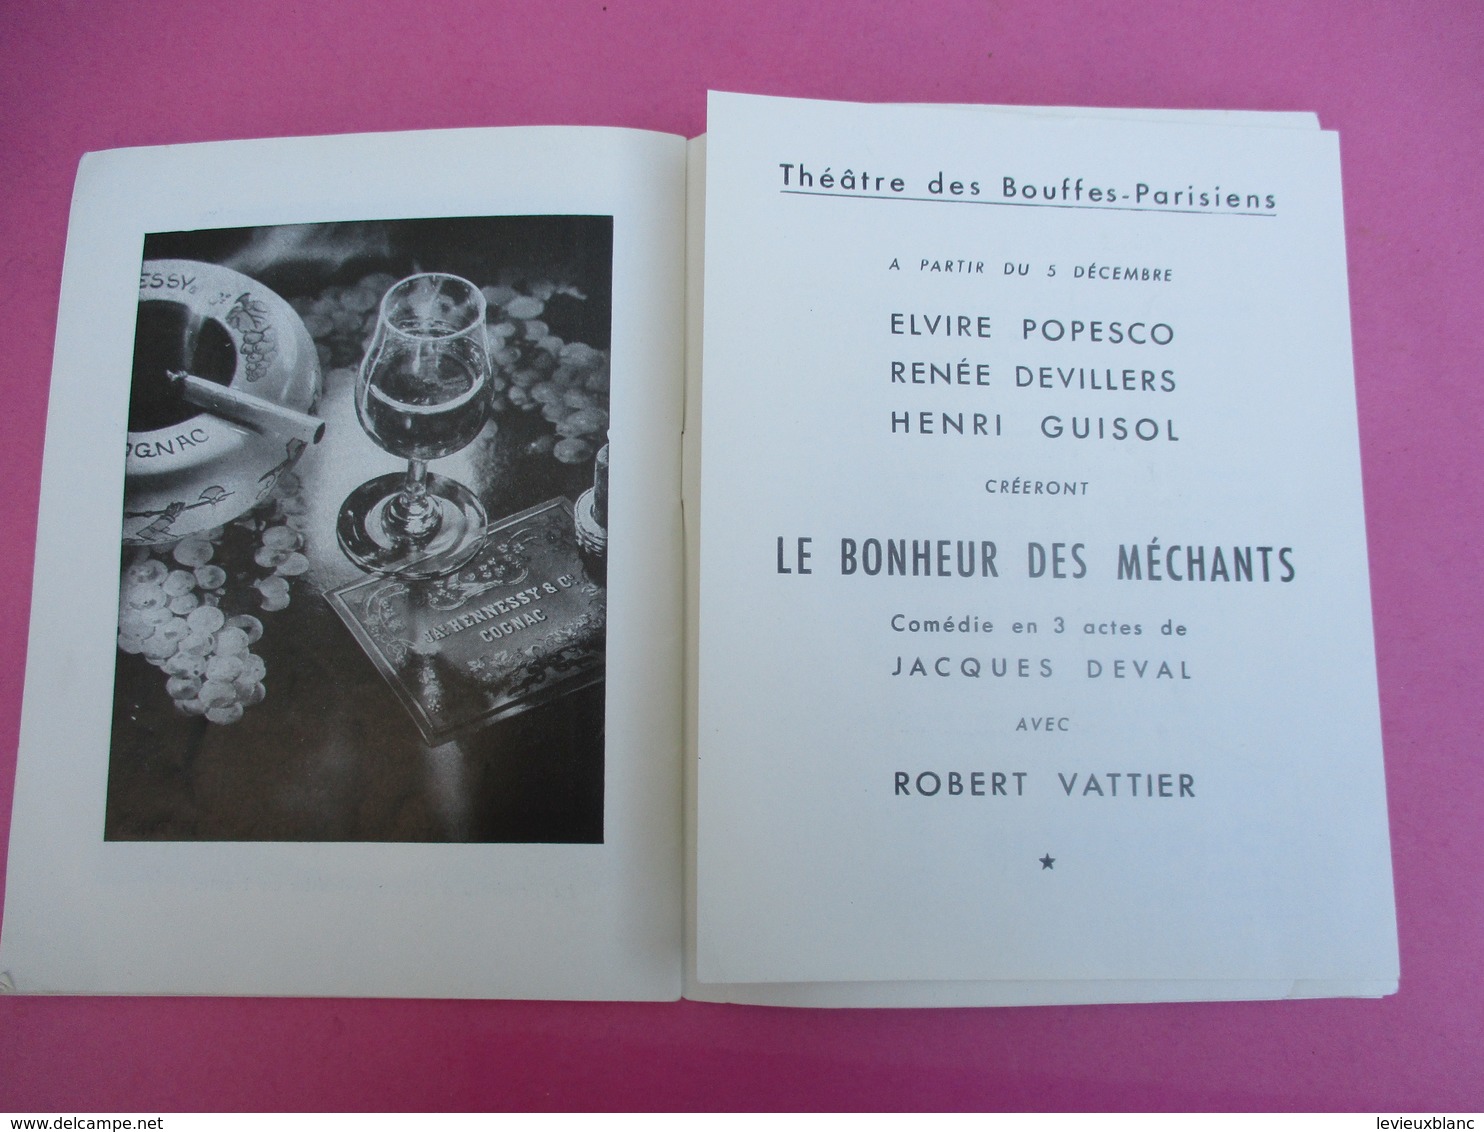 Théâtre des BOUFFES PARISIENS/ NINA/ André Roussin/Elvire POPESCO/Guy Saint Clair/ 1952   PROG177